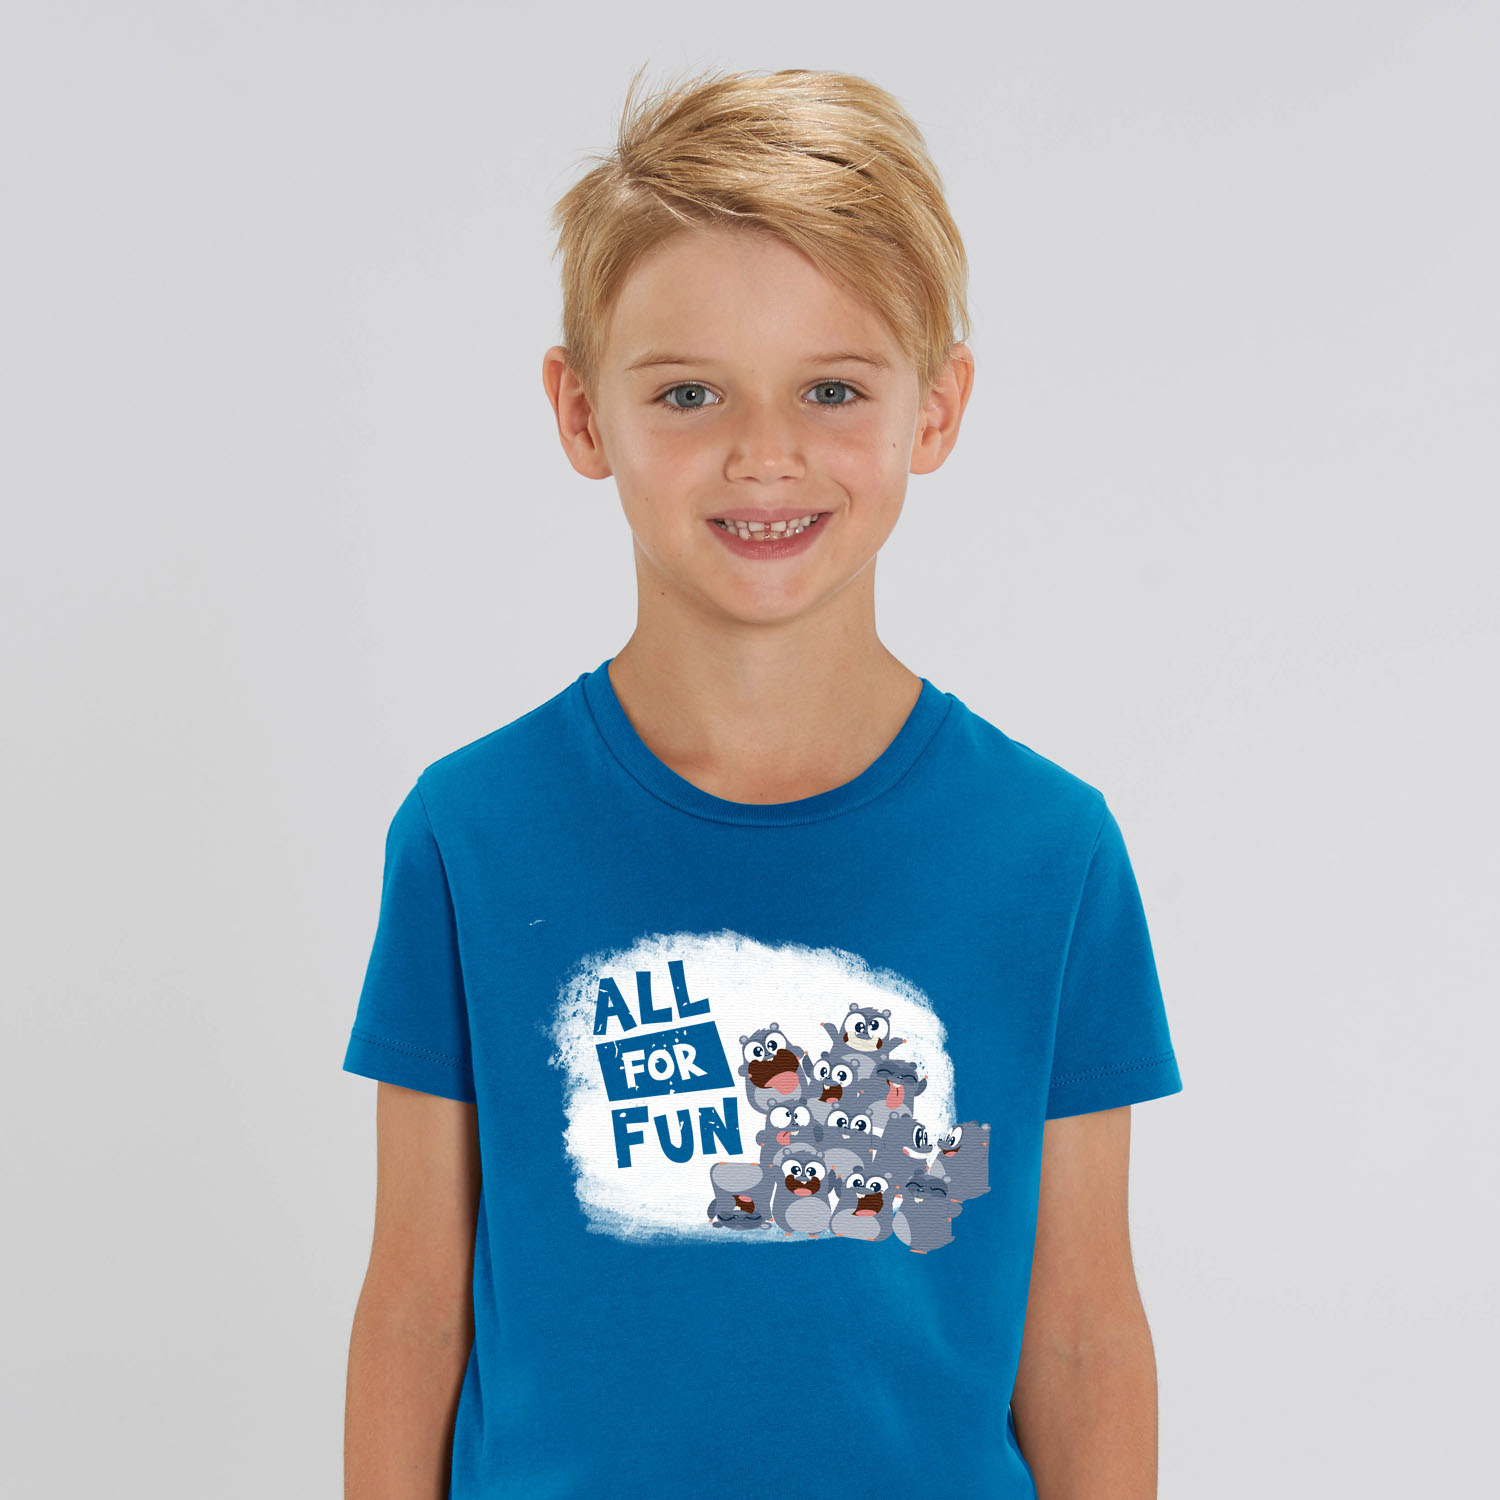 Kid T-shirt "all for fun" blue boy